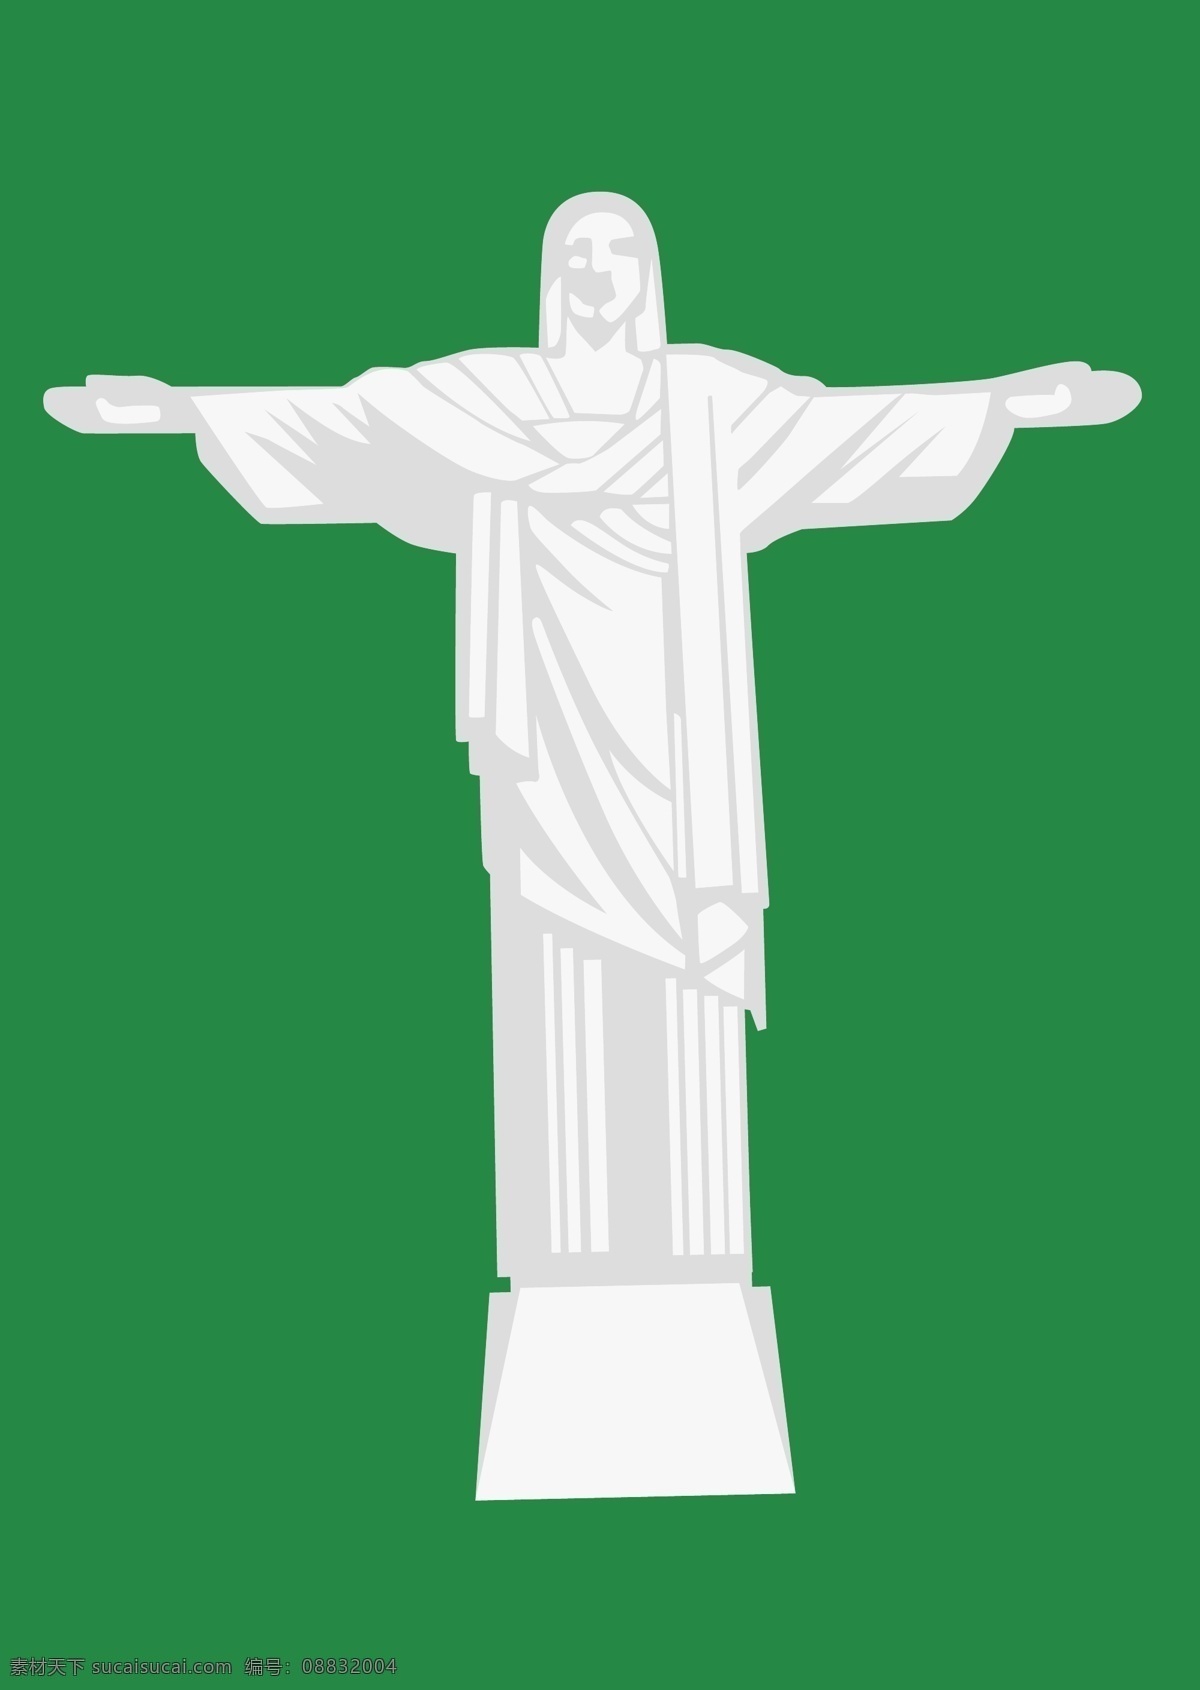 耶稣图片 耶稣 巴西耶稣 耶稣神像 耶稣雕像 巴西代表 卡通 卡通设计